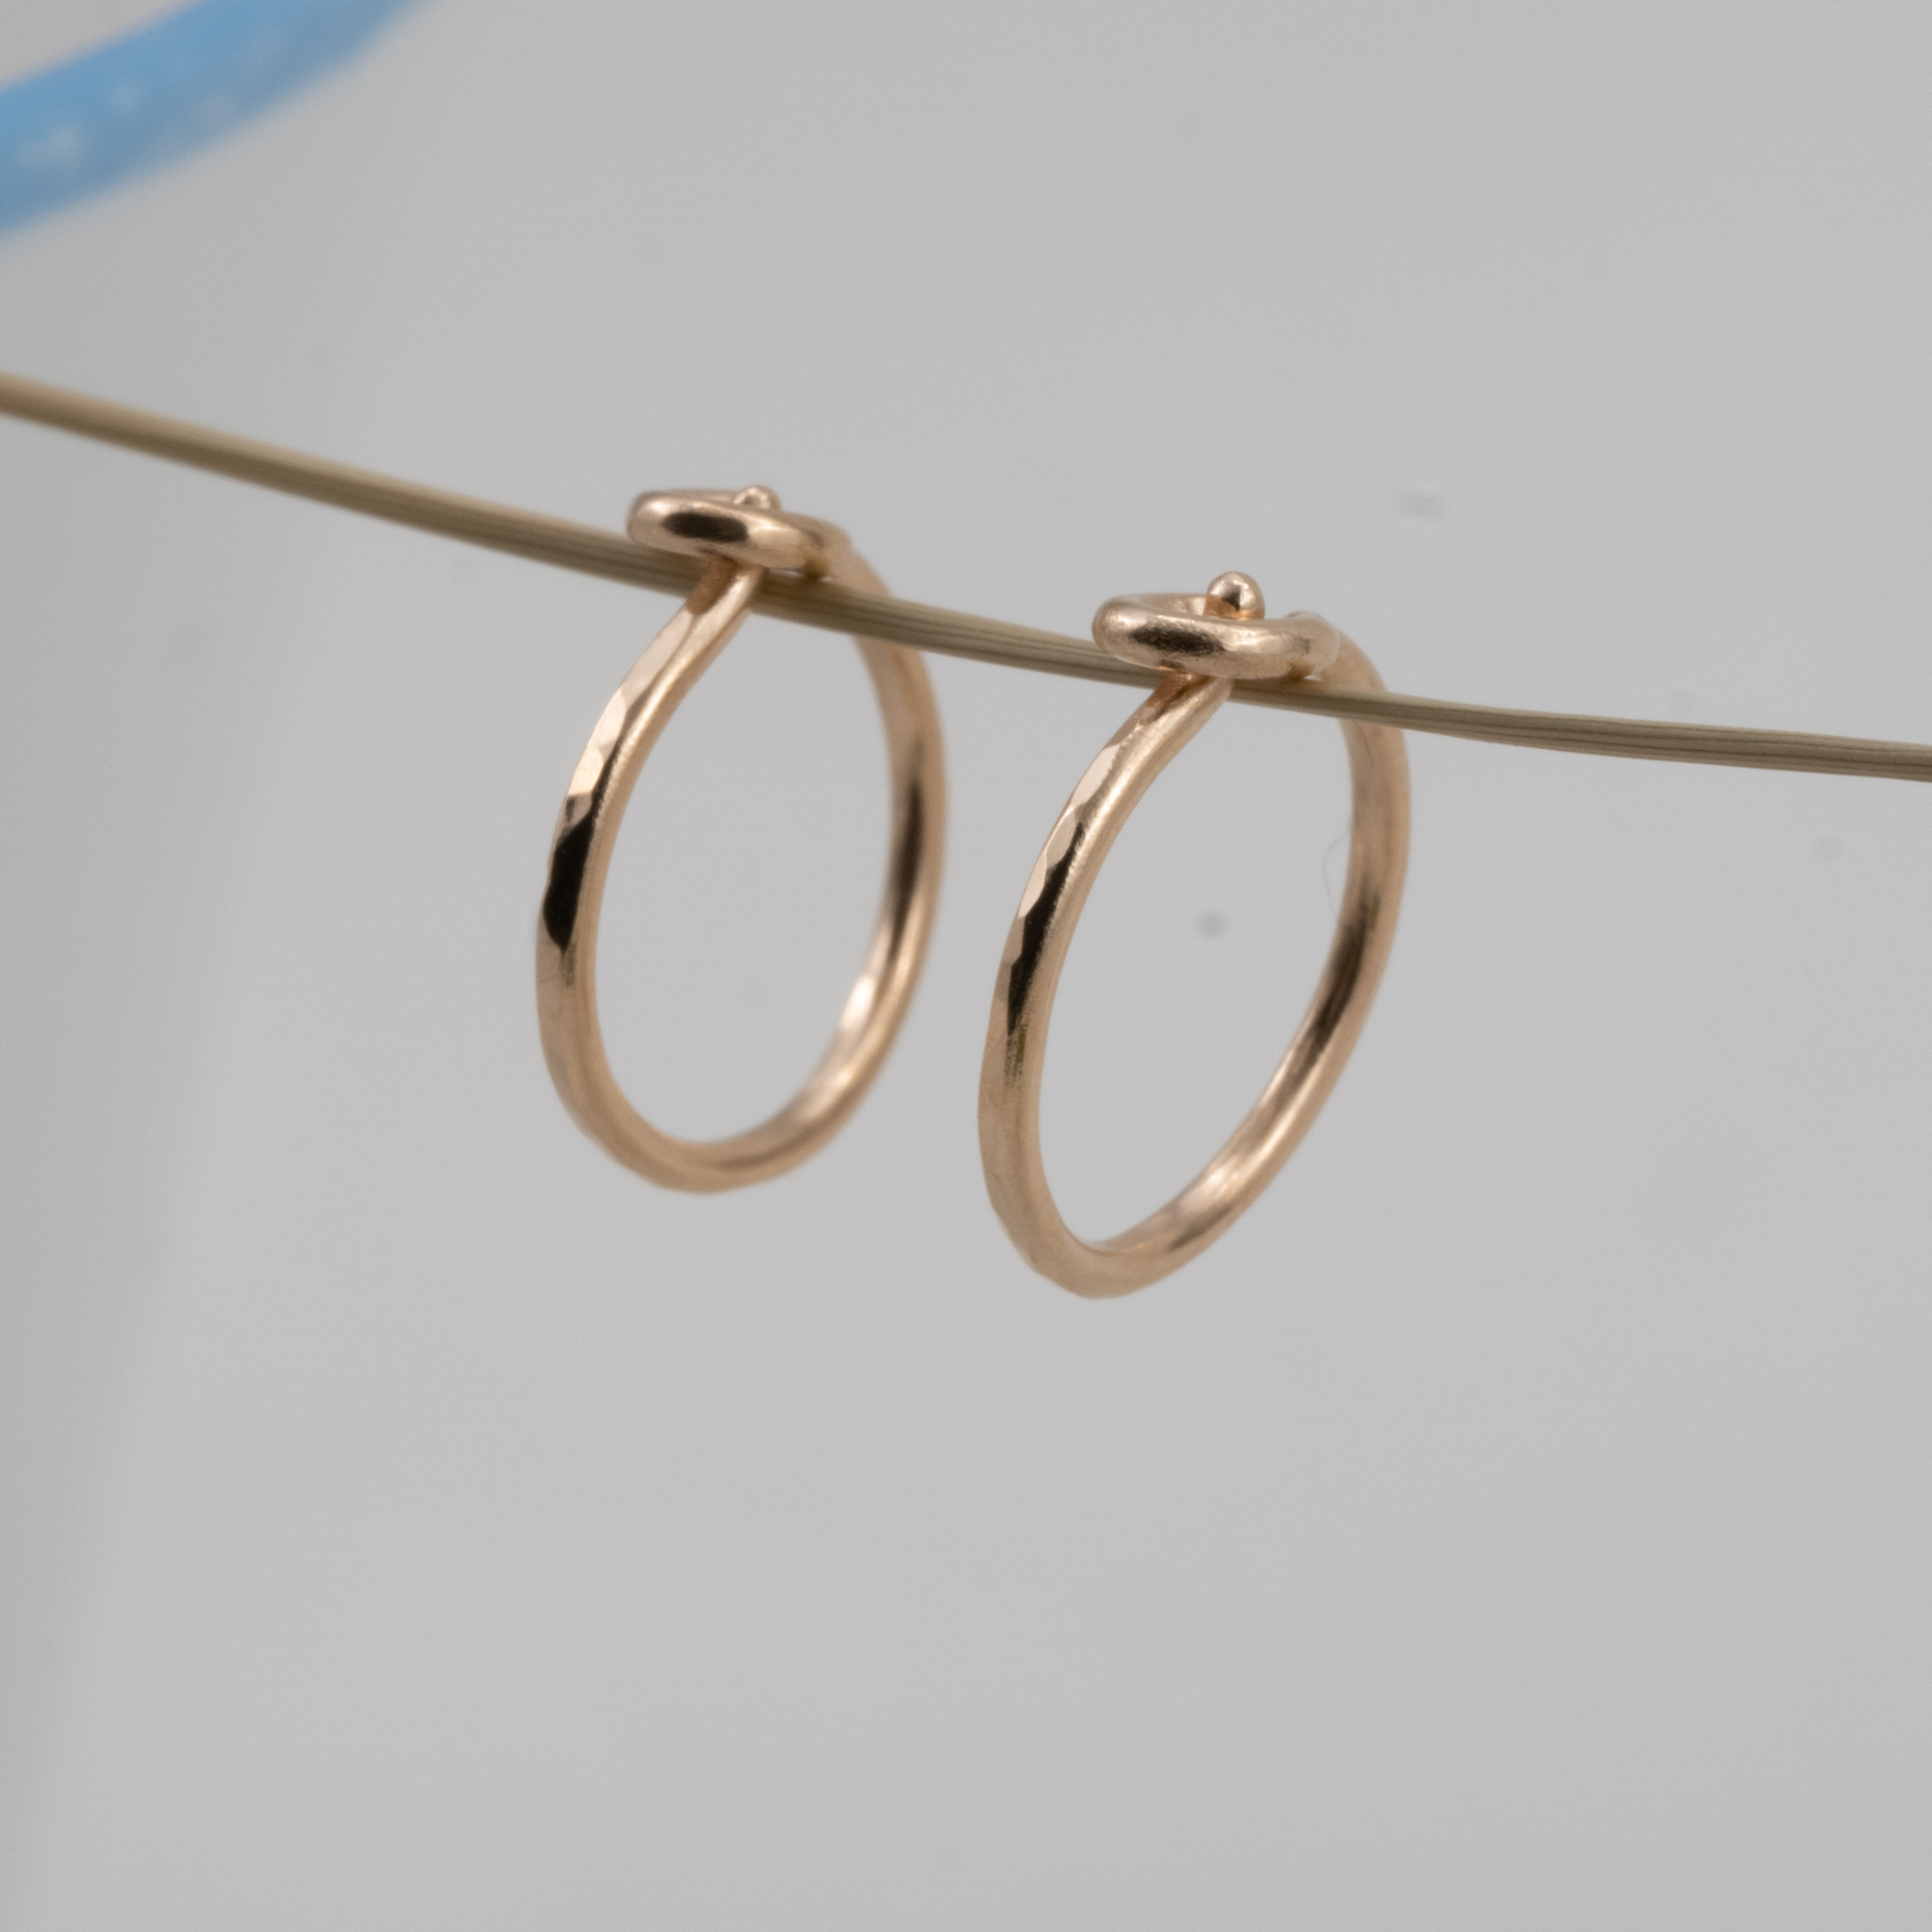 Handmade Hoops Earrings Recycled Gold